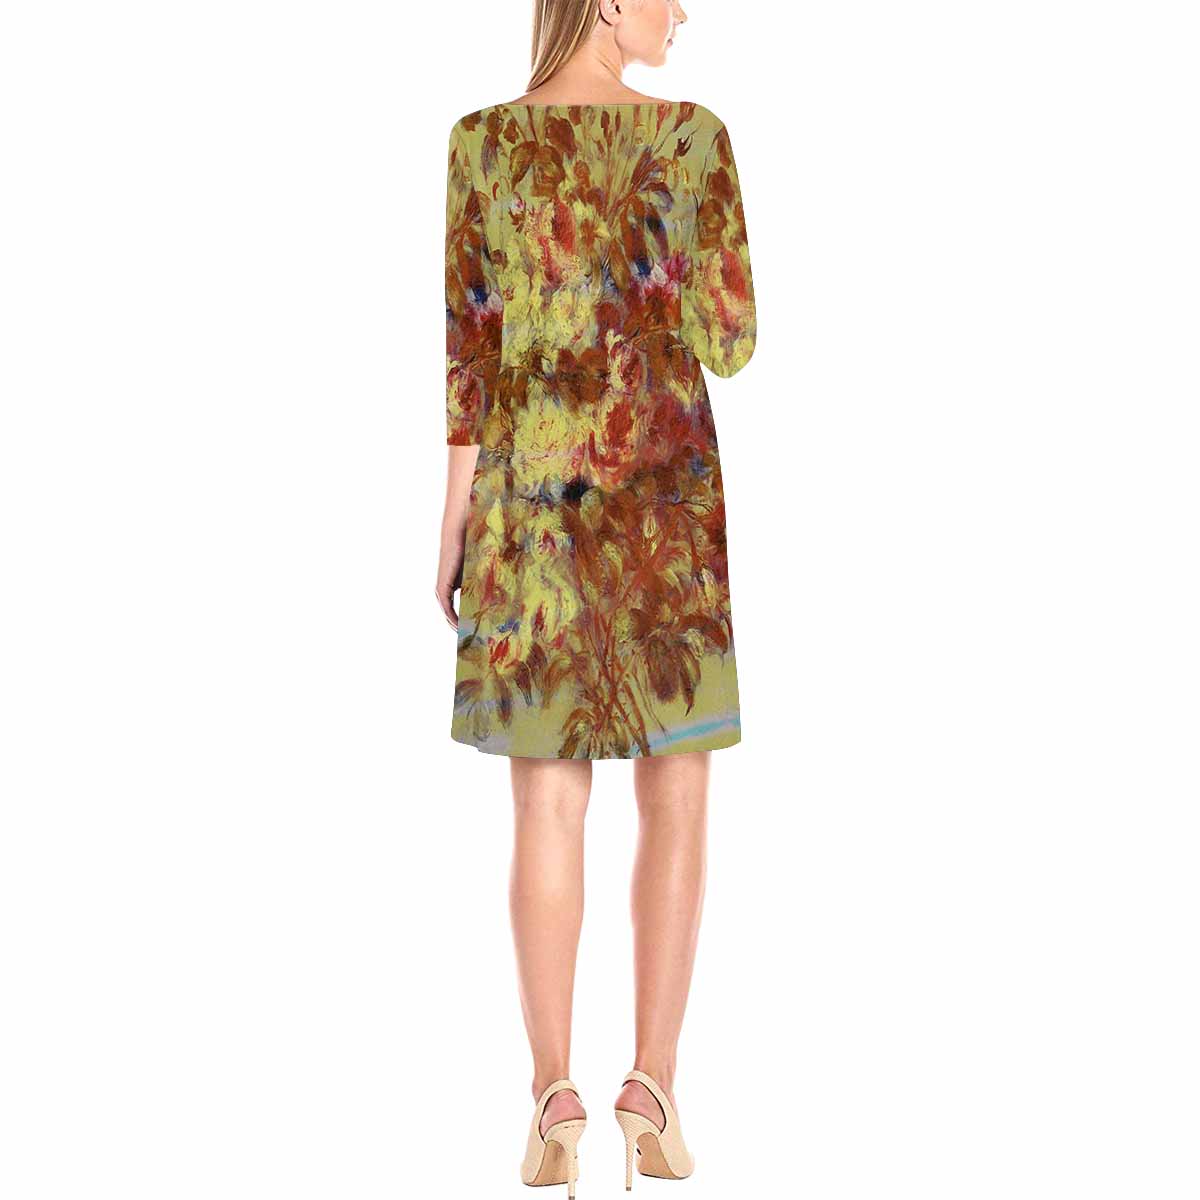 Vintage floral loose dress, model D29532 Design 11